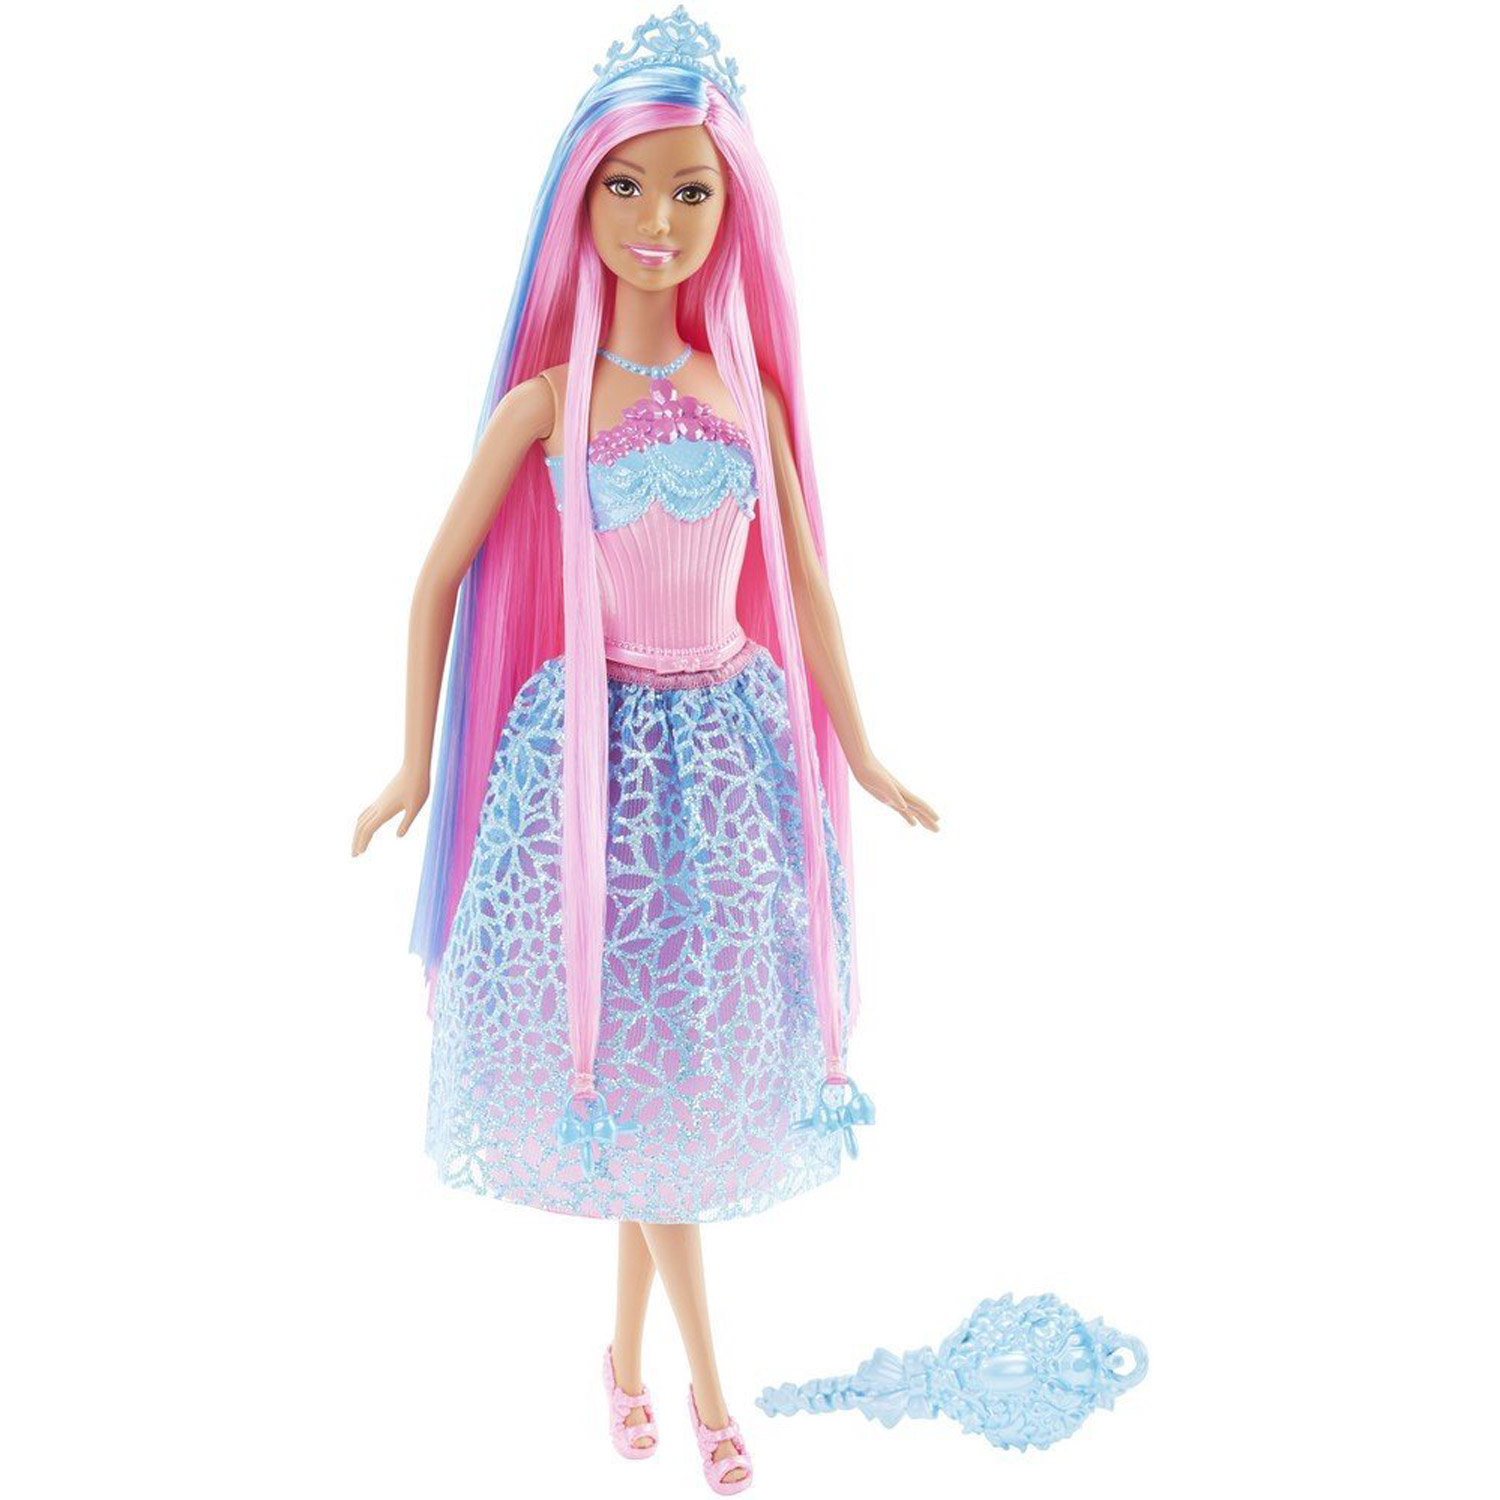 Poupée Barbie : Princesse chevelure magique : Rose et bleue - Jeux